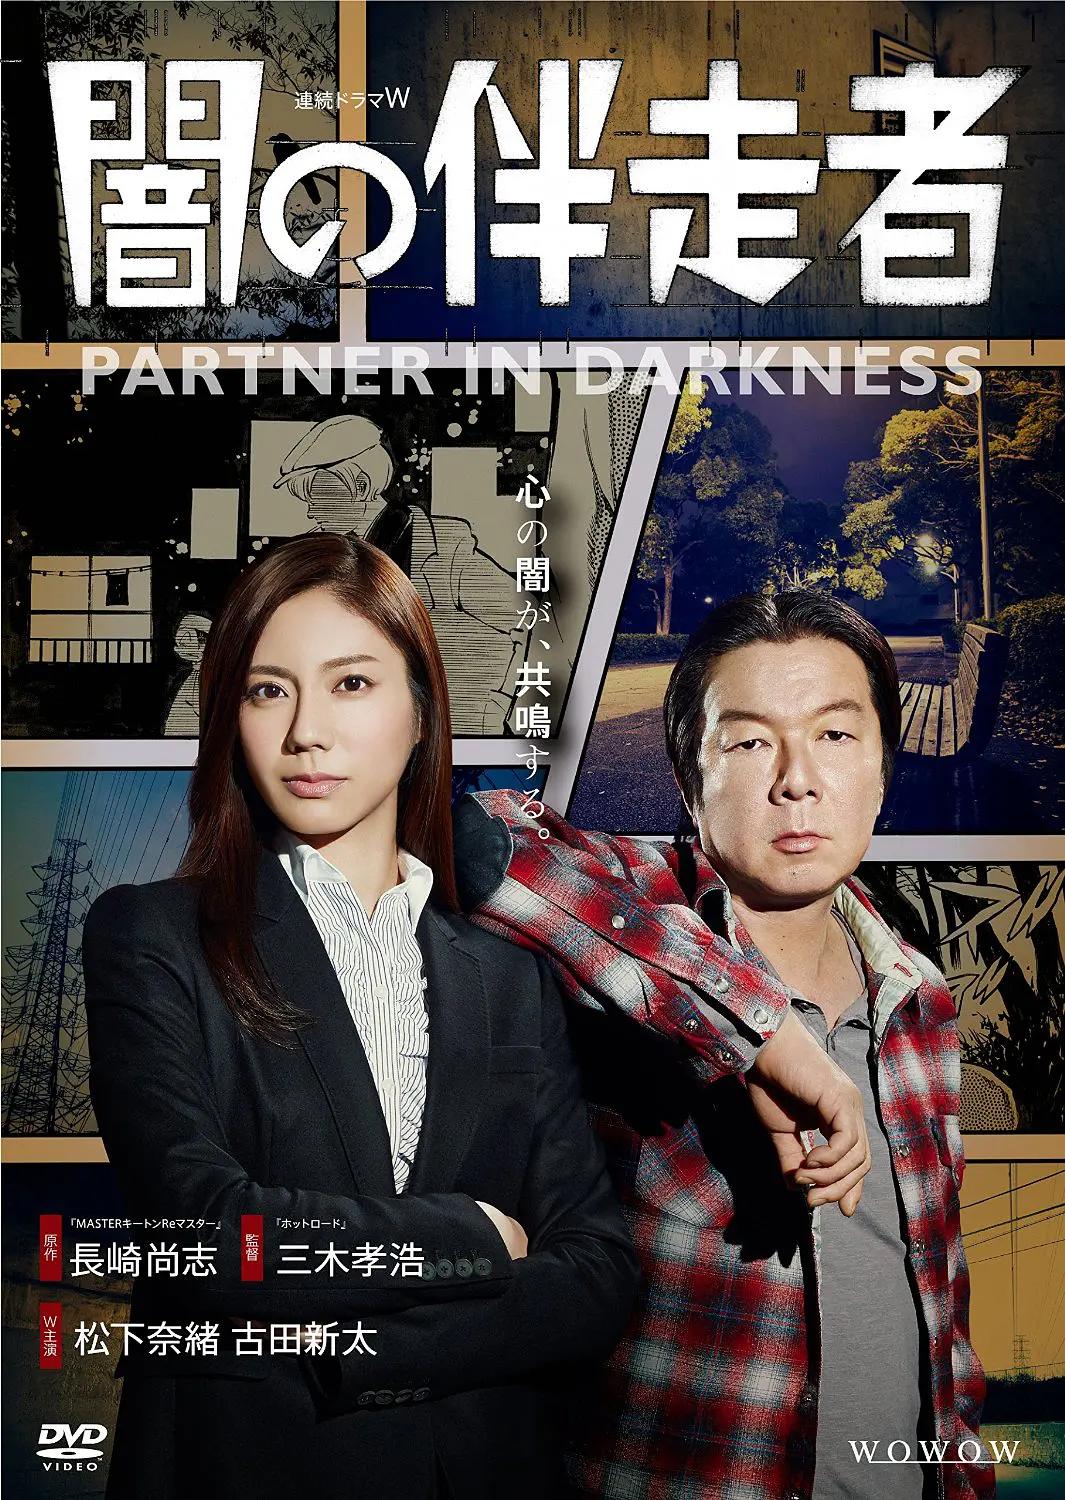 免费在线观看完整版日本剧《暗之伴走者》